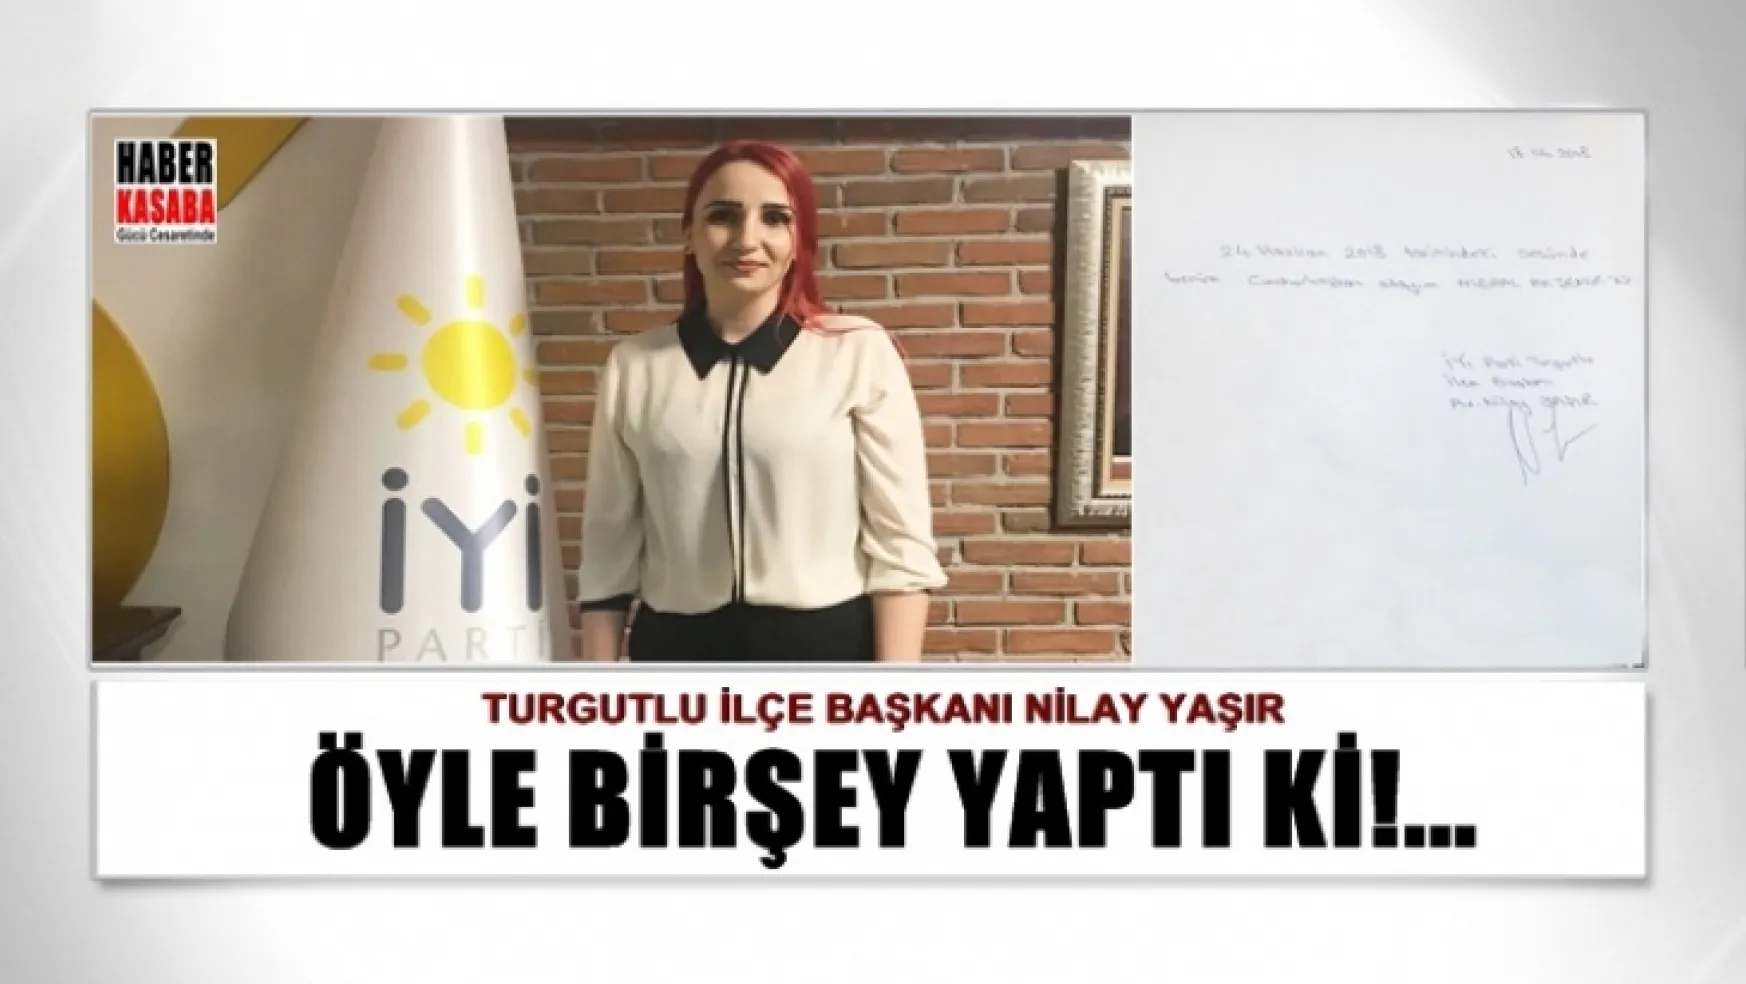 Turgutlu'da Yaşır, Siyasetin Renkli Yüzü Olacak Gibi Görülüyor...